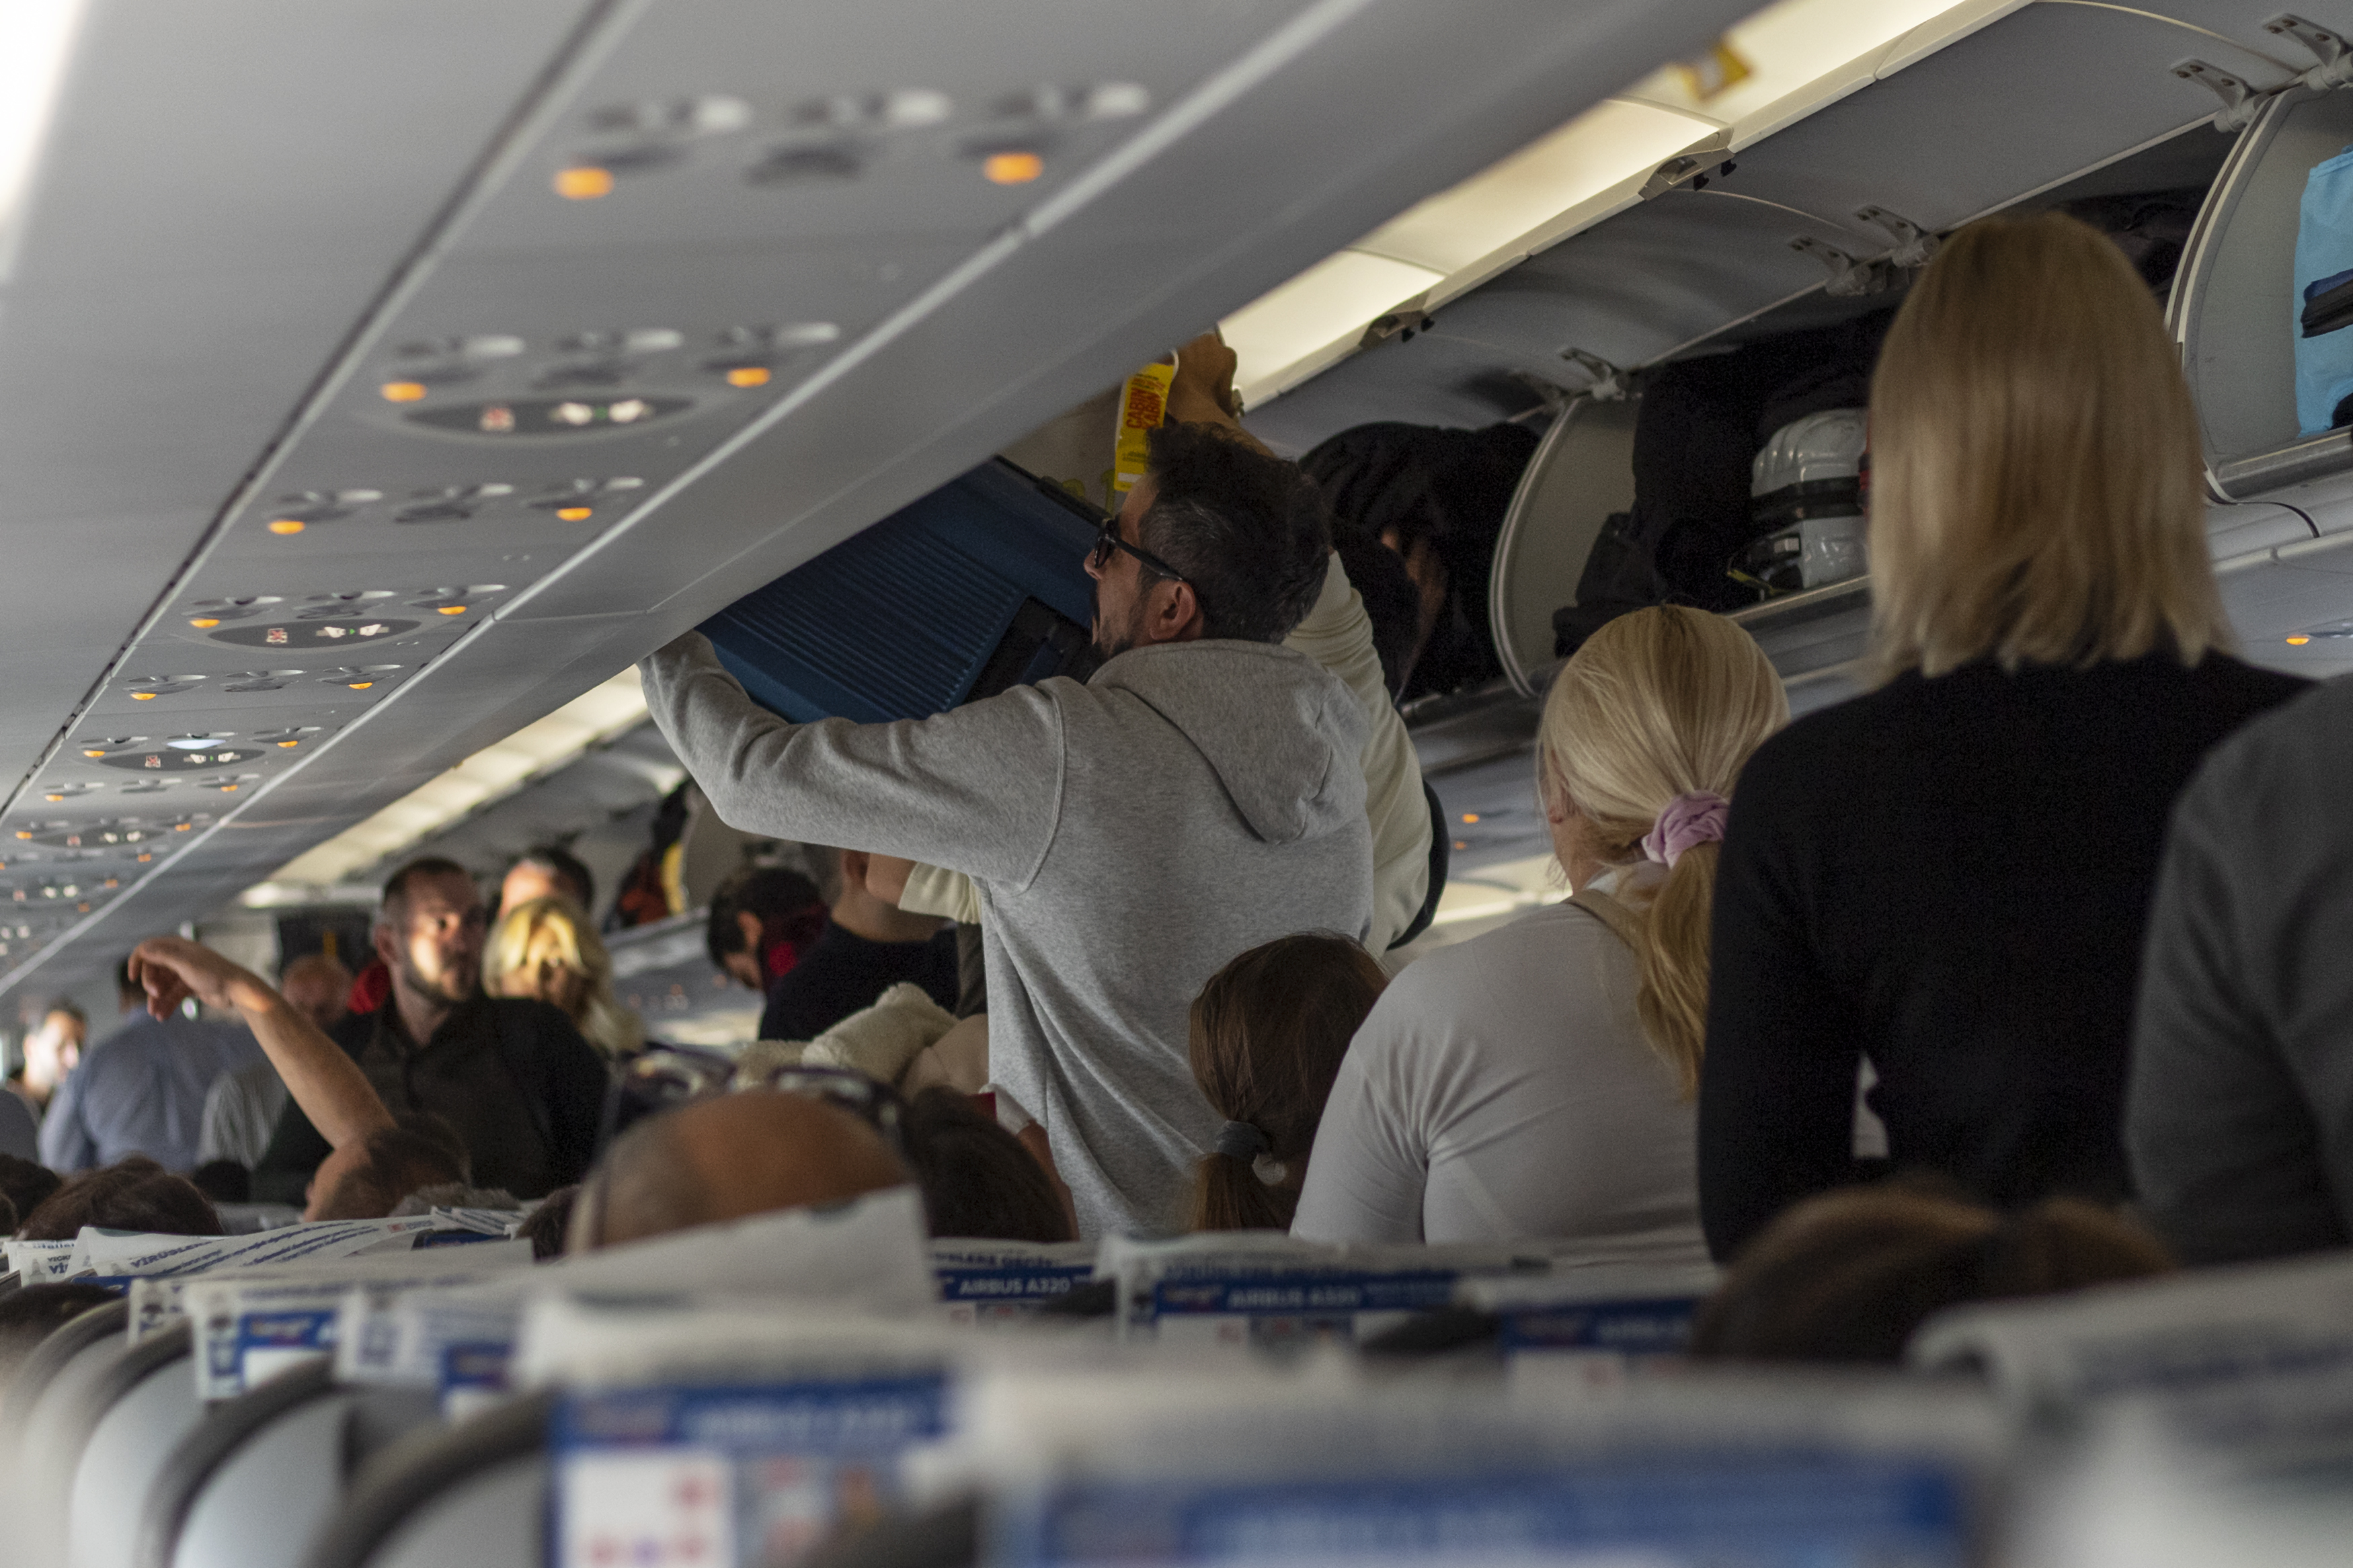 Certains passagers font des choses incroyables pendant les vols, comme voler des choses (image d'archive)